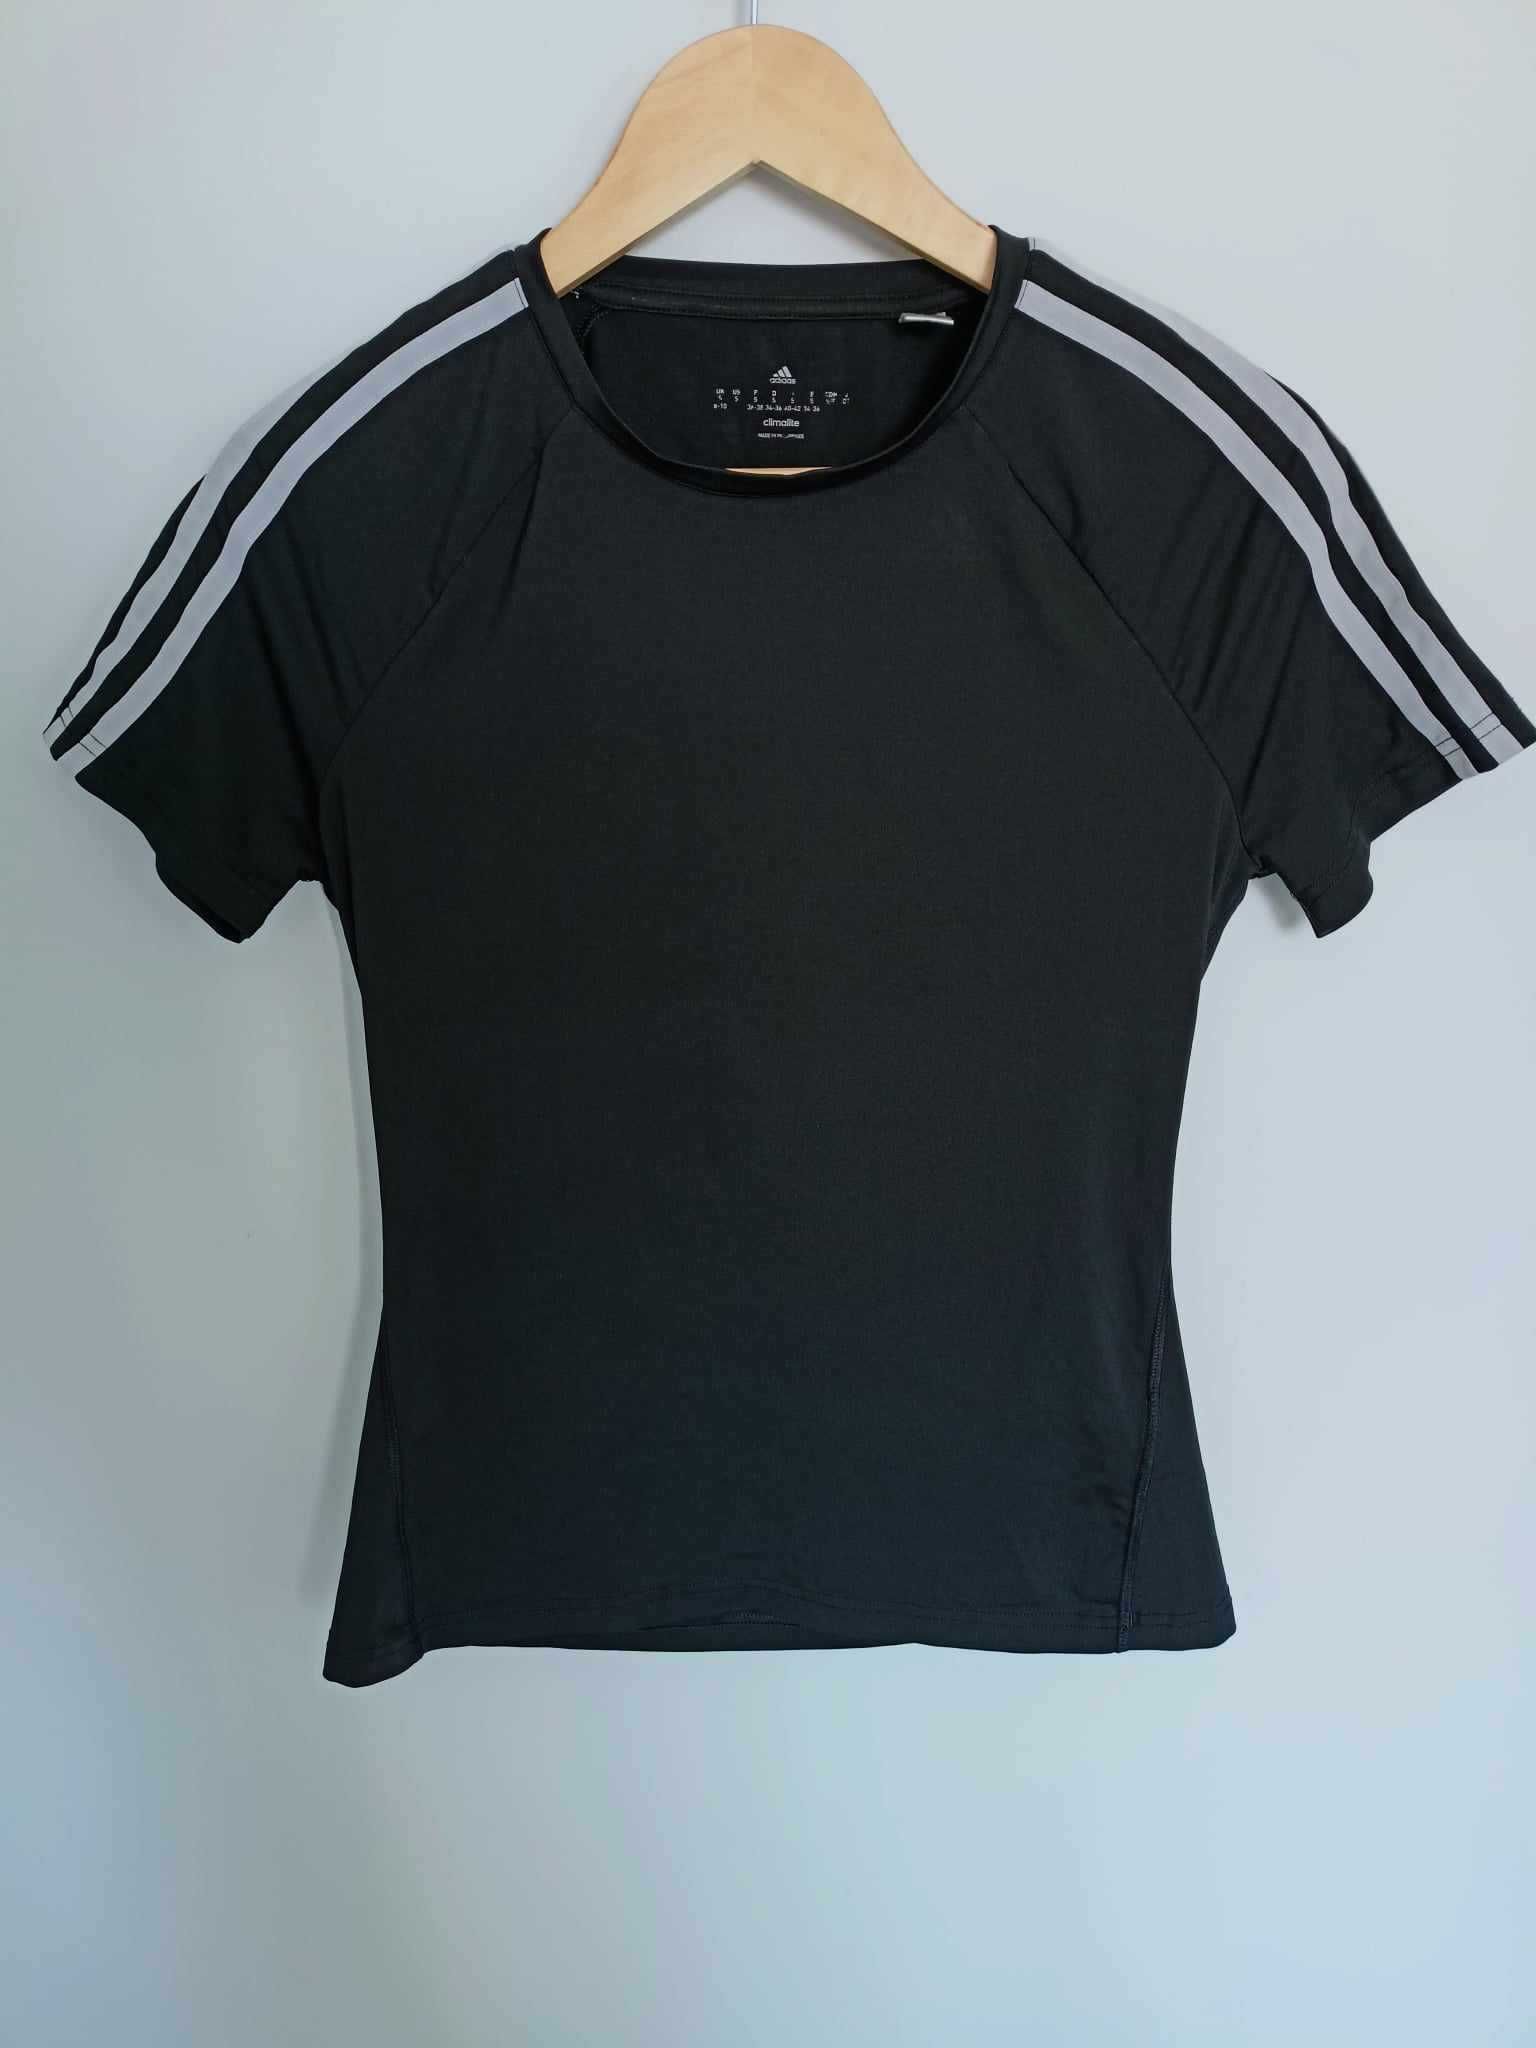 Damski t-shirt/koszulka treningowa Adidas Climalite, czarna, rozmiar S